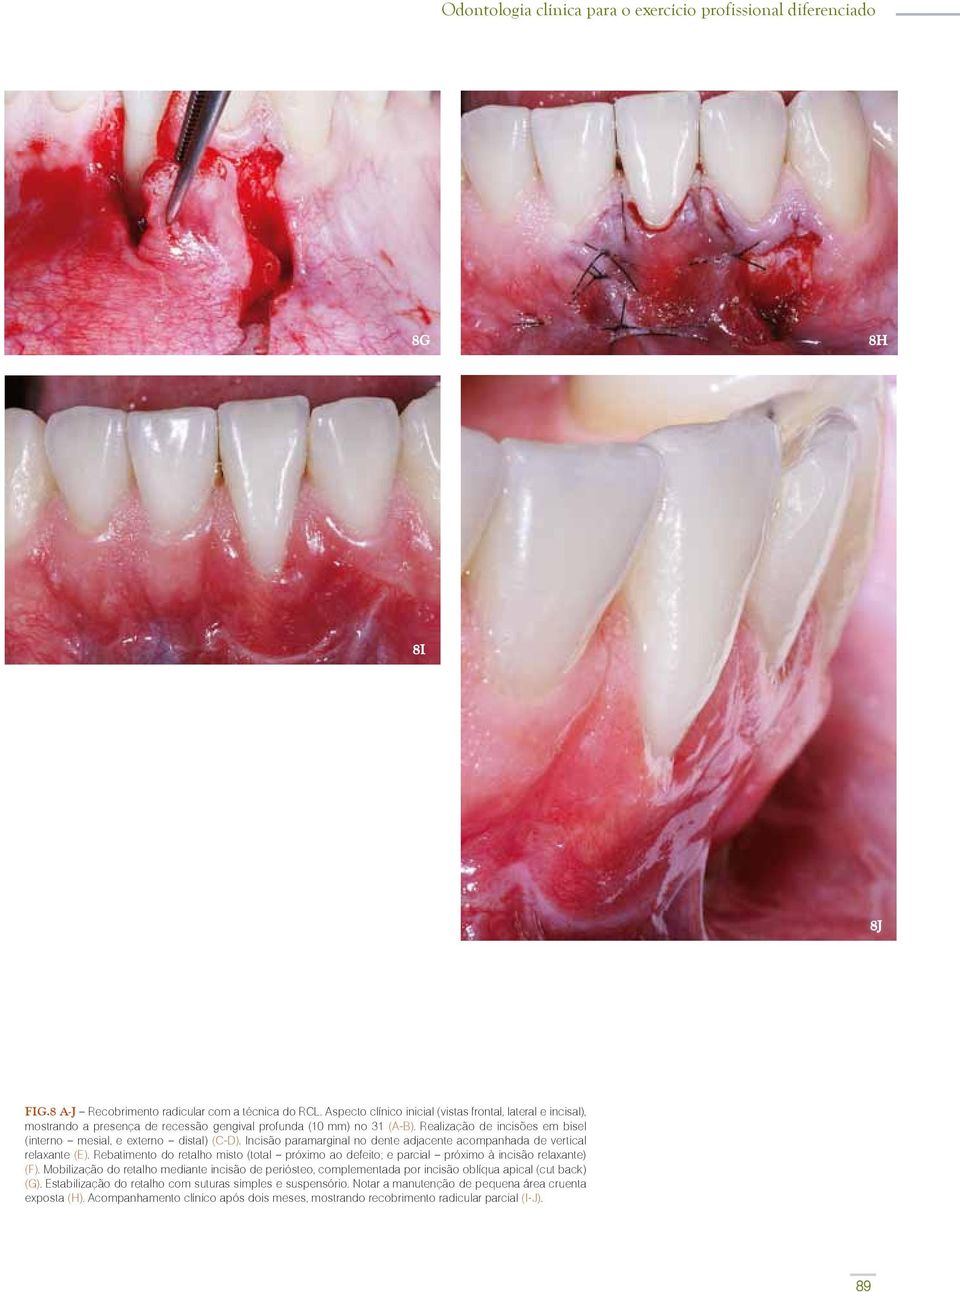 Realização de incisões em bisel (interno mesial, e externo distal) (C-D). Incisão paramarginal no dente adjacente acompanhada de vertical relaxante (E).